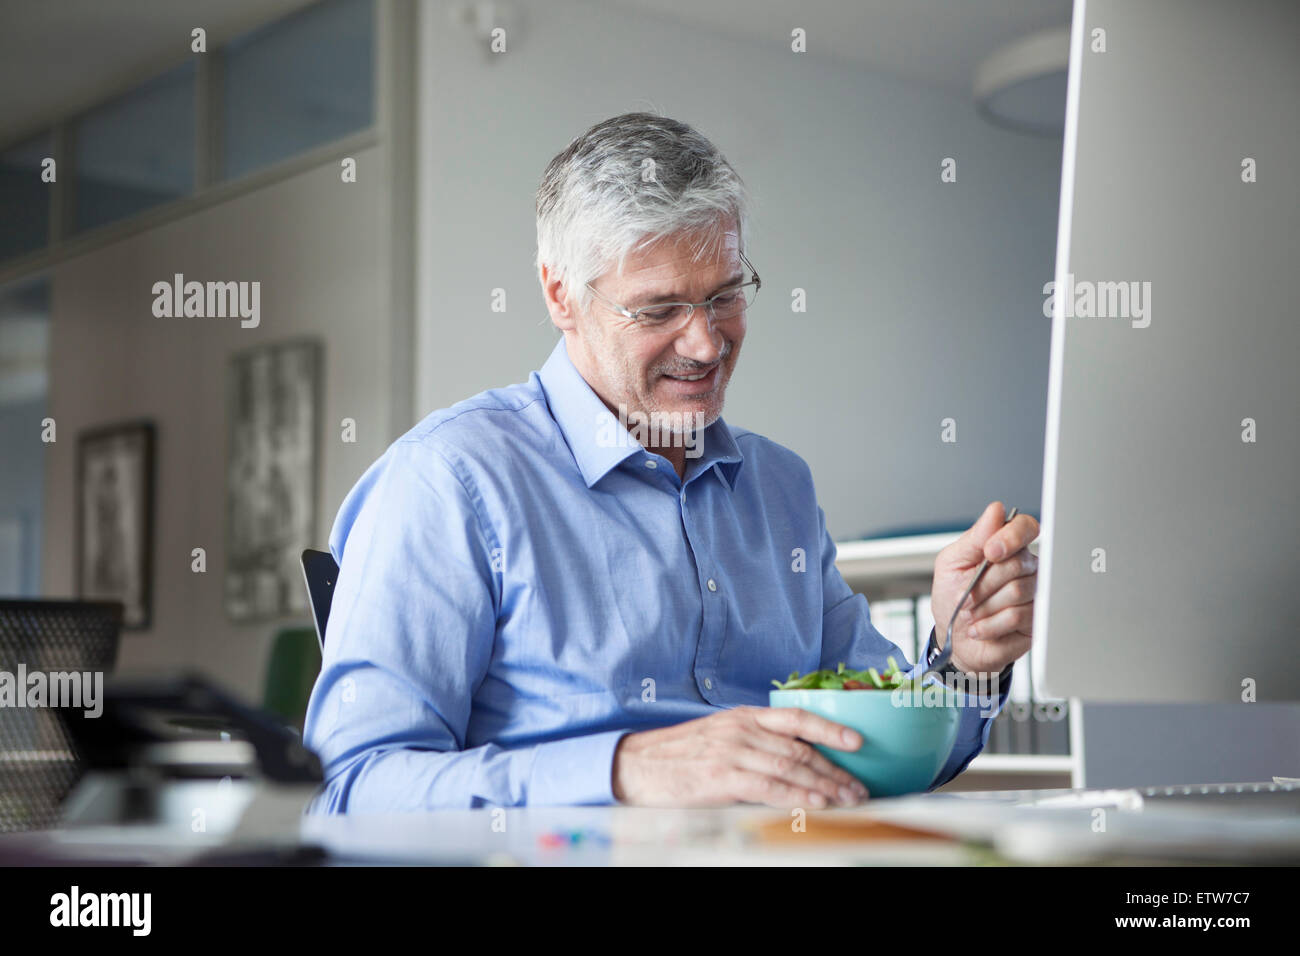 Businessman sitting at desk, eating salad Banque D'Images